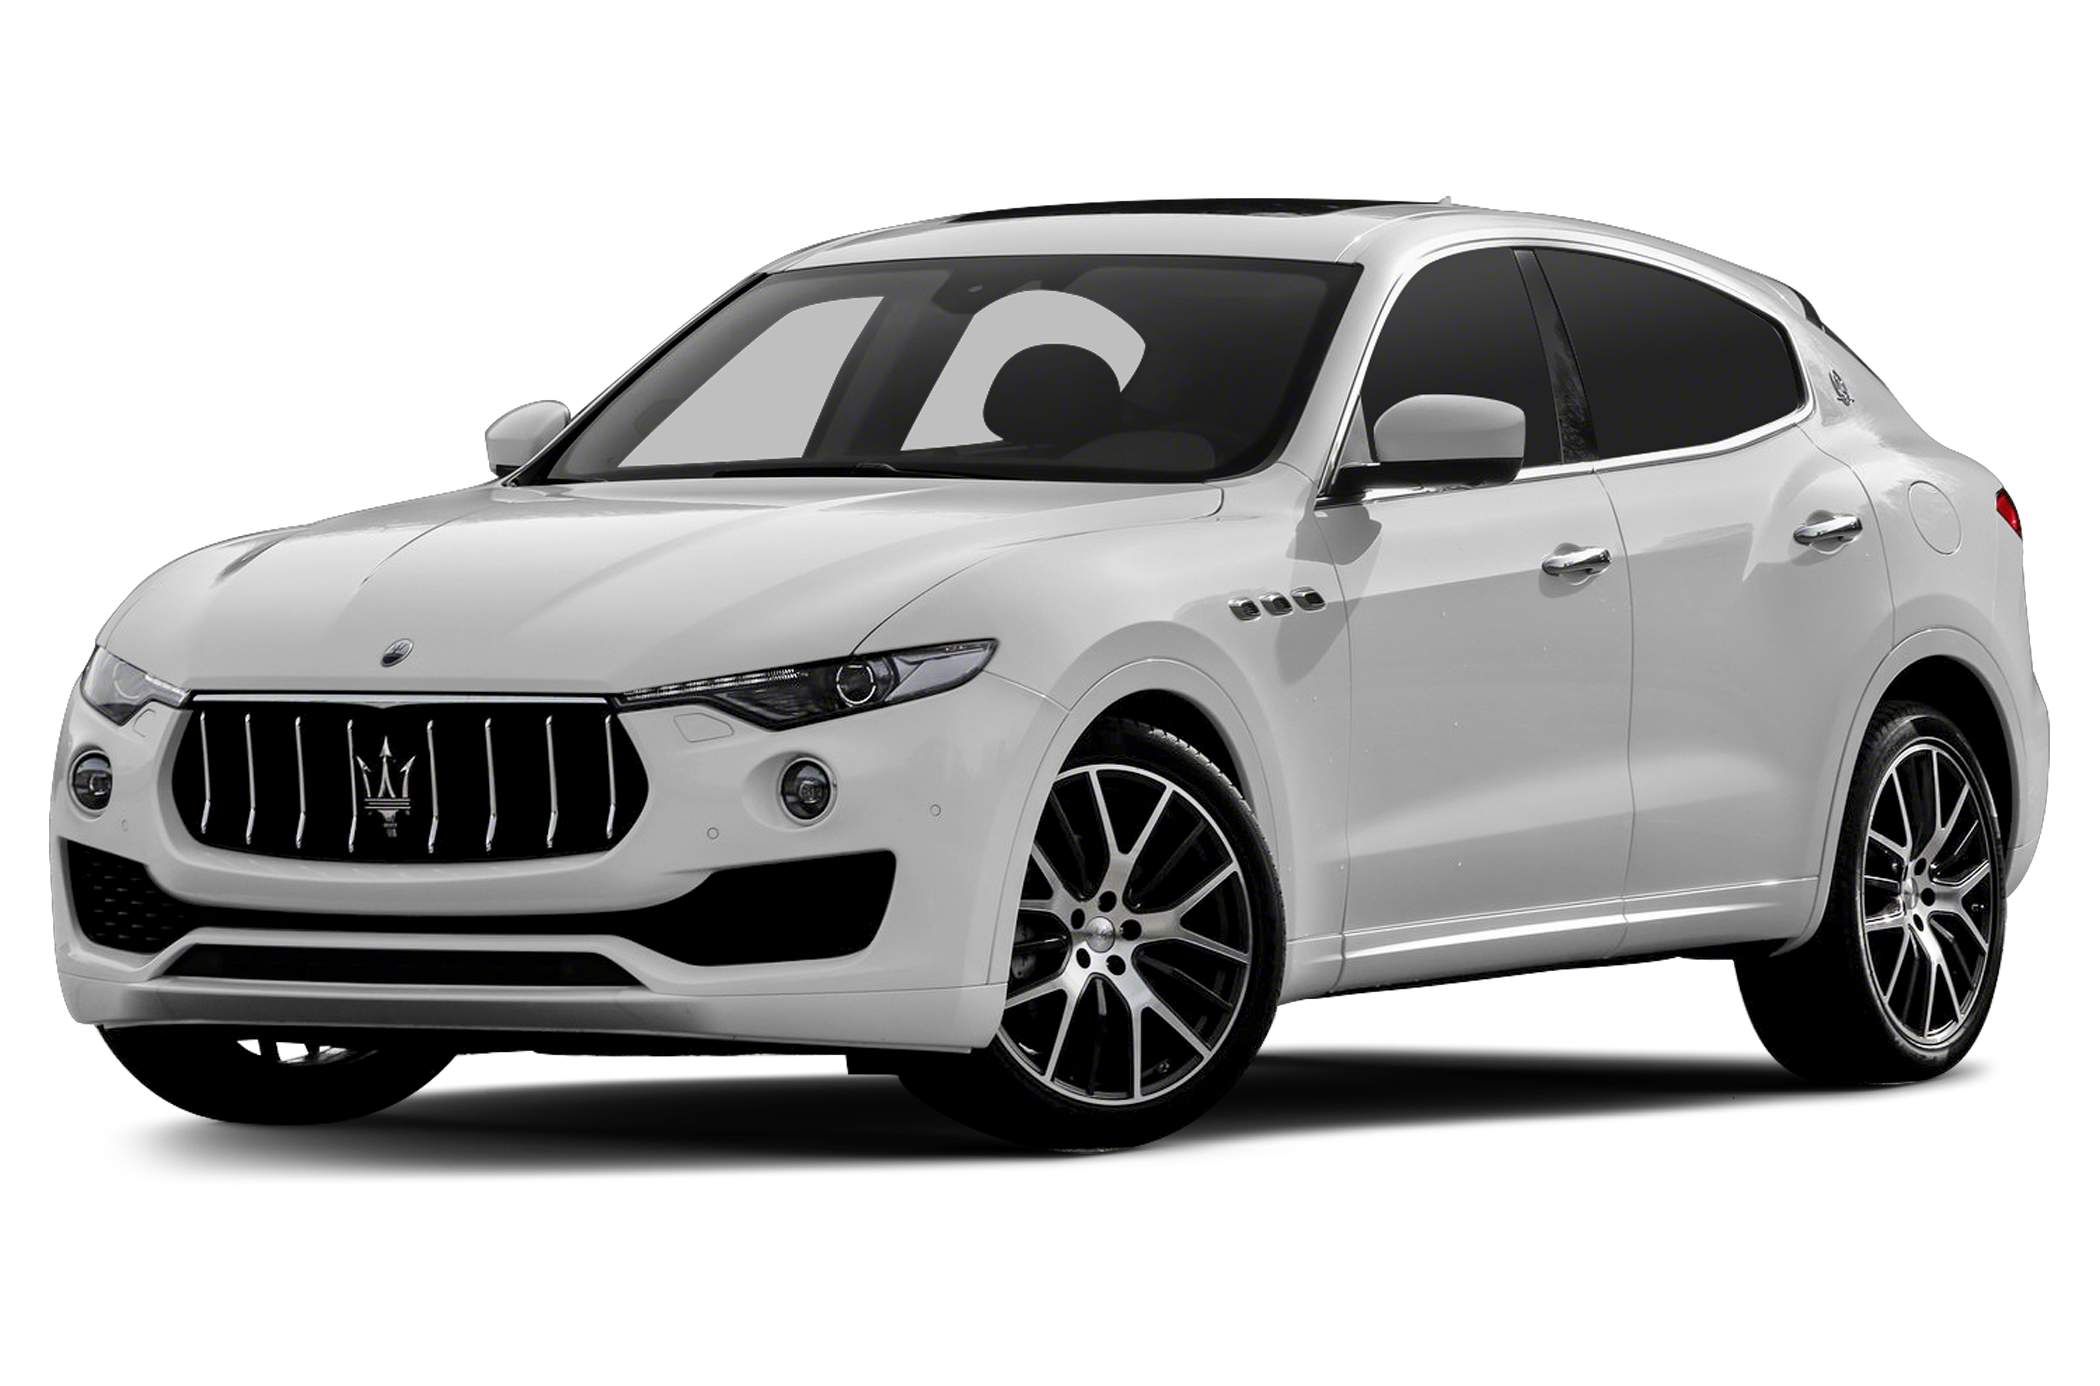 Gallery: Maserati's first SUV, the Levante